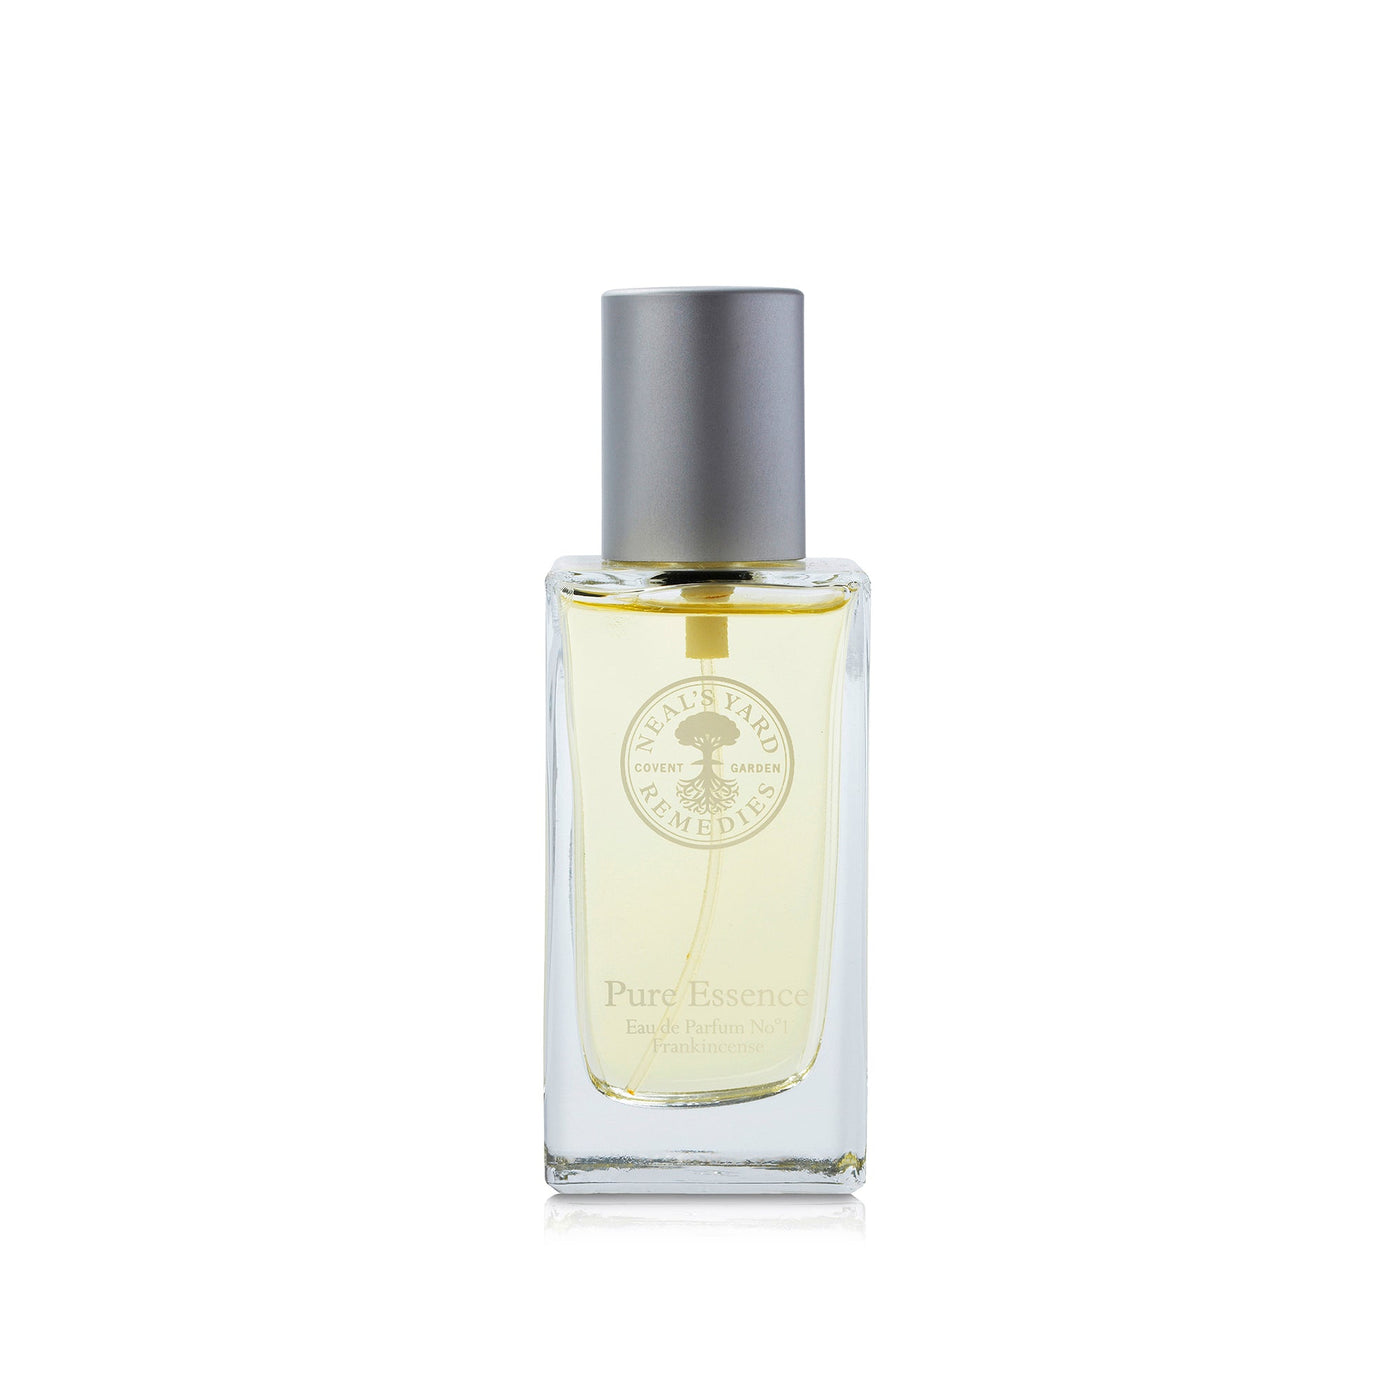 frankincense-pure-essence-eau-de-parfum-no.1-front-2500-high-res-2000px.jpg